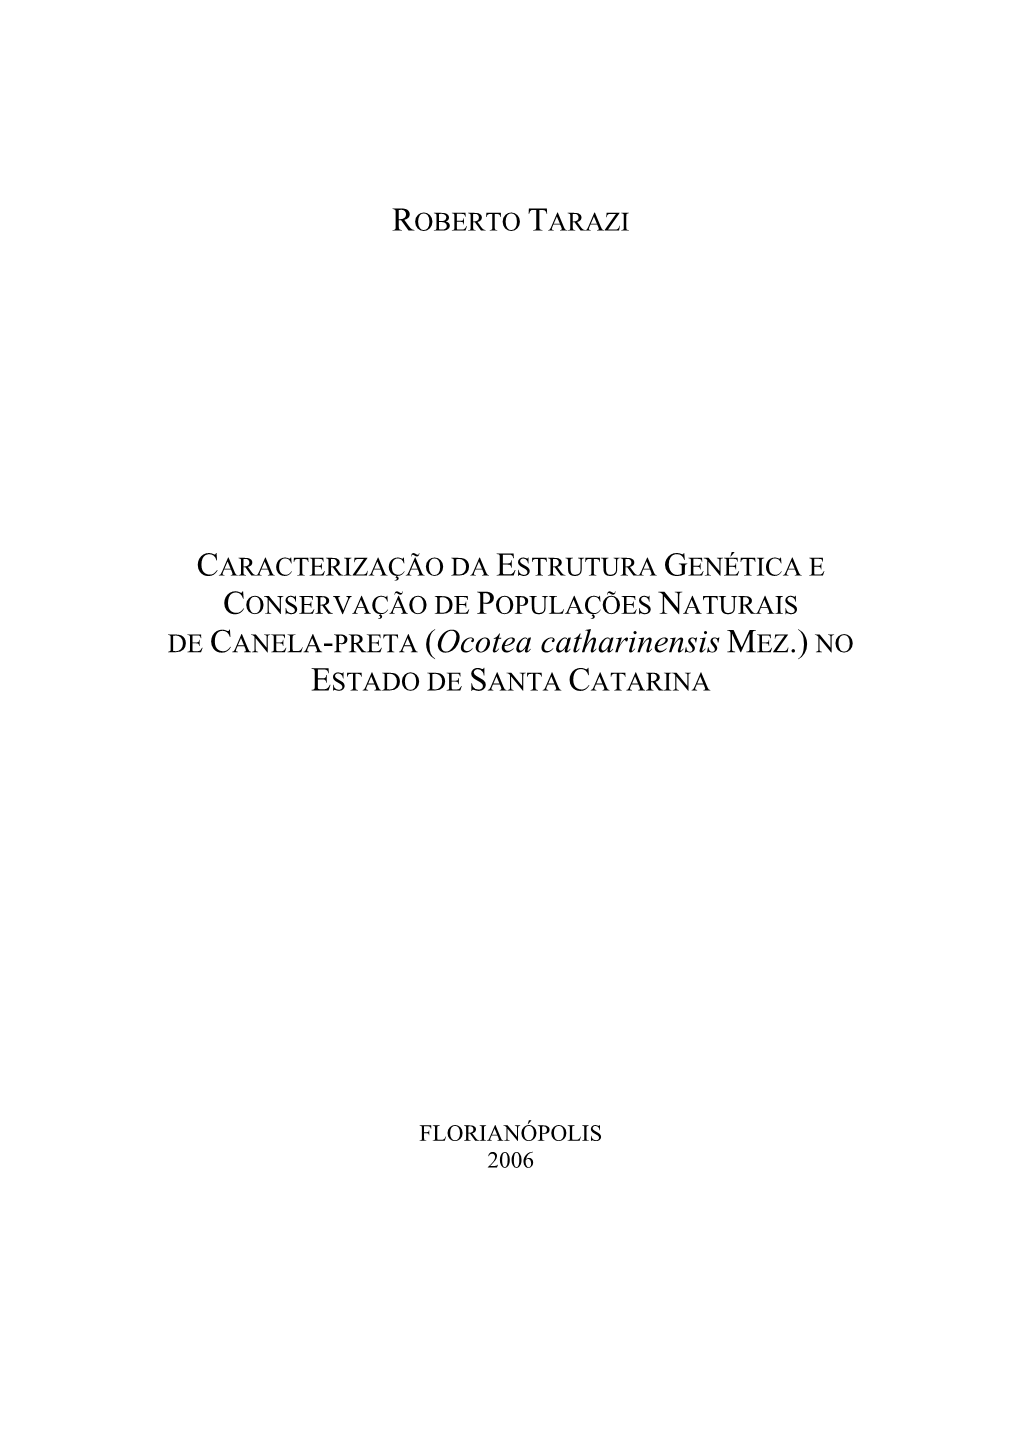 DE CANELA-PRETA (Ocotea Catharinensis MEZ.) NO ESTADO DE SANTA CATARINA